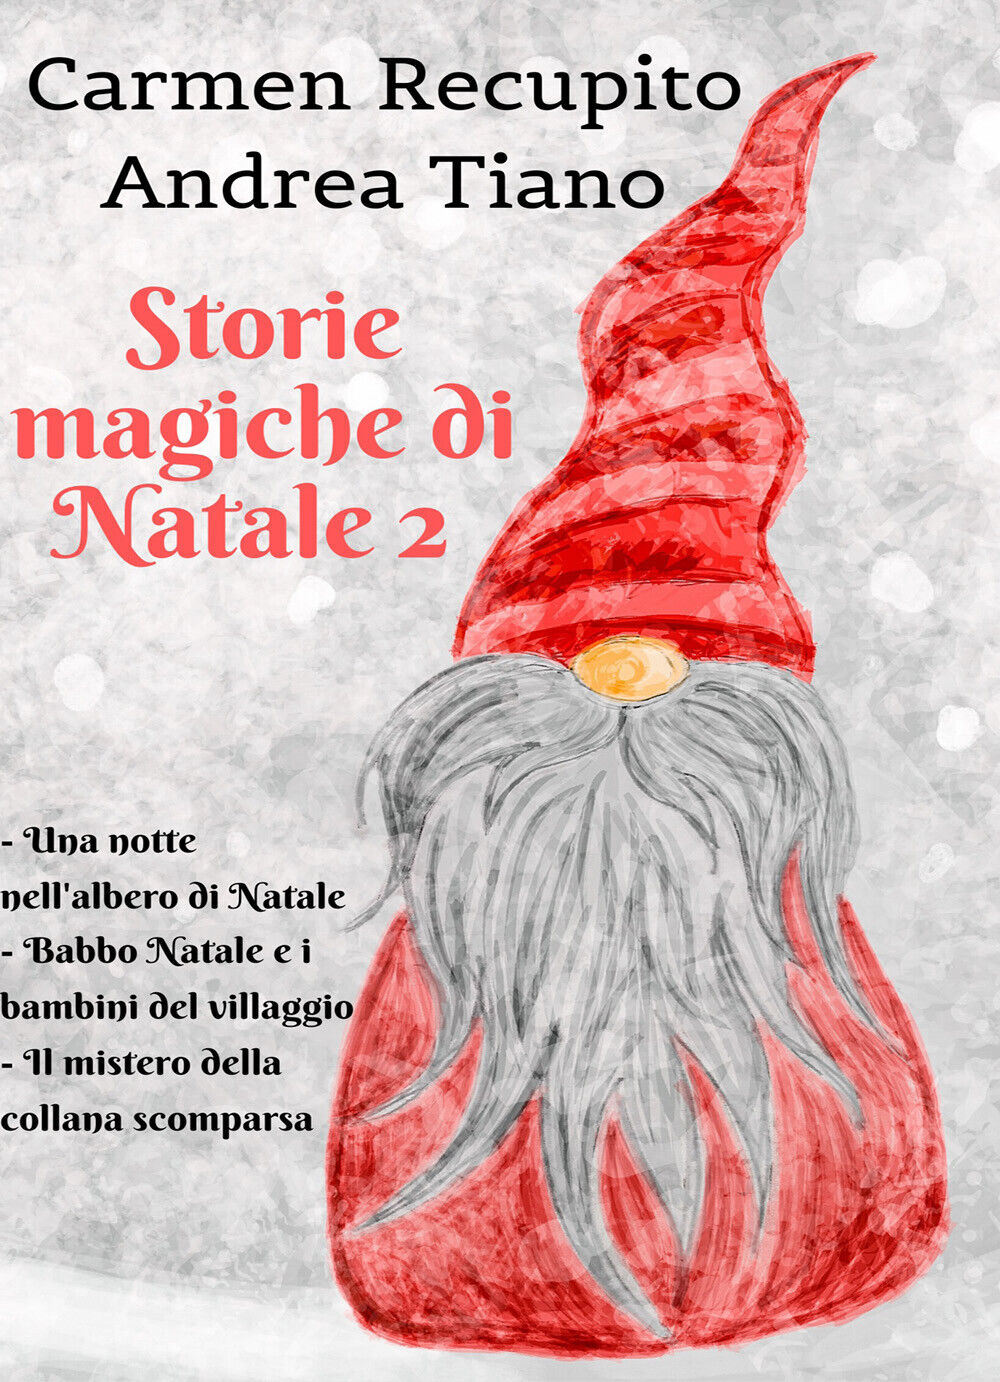 Storie magiche di Natale 2 - Carmen Recupito - Andrea Tiano,  2019,  Youcanprit libro usato